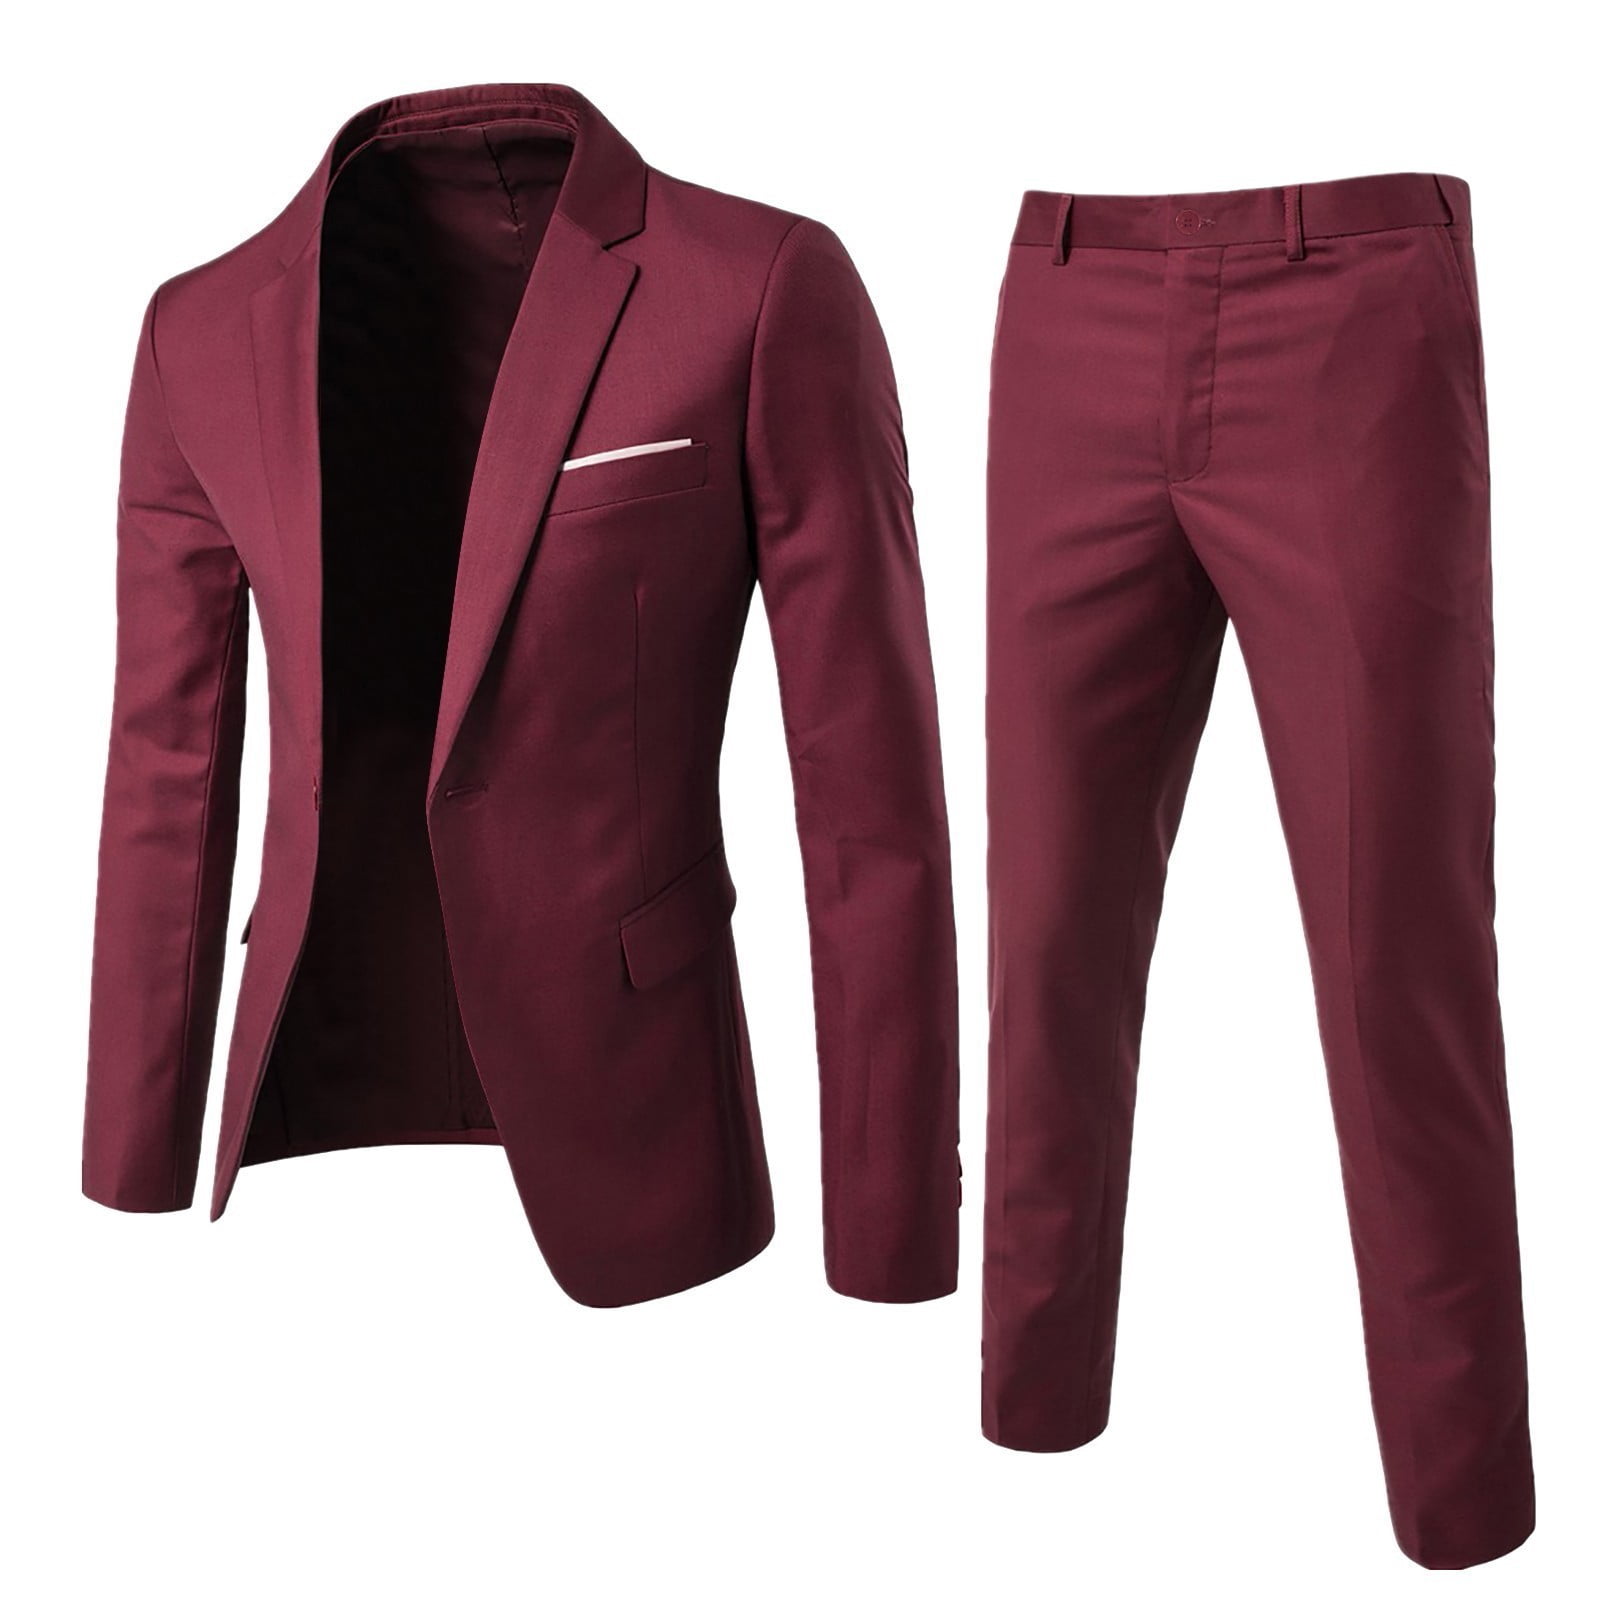 UIX Pants Slim Party Jacket 2 Piece Men’s Vest R Business Wedding Suit ...